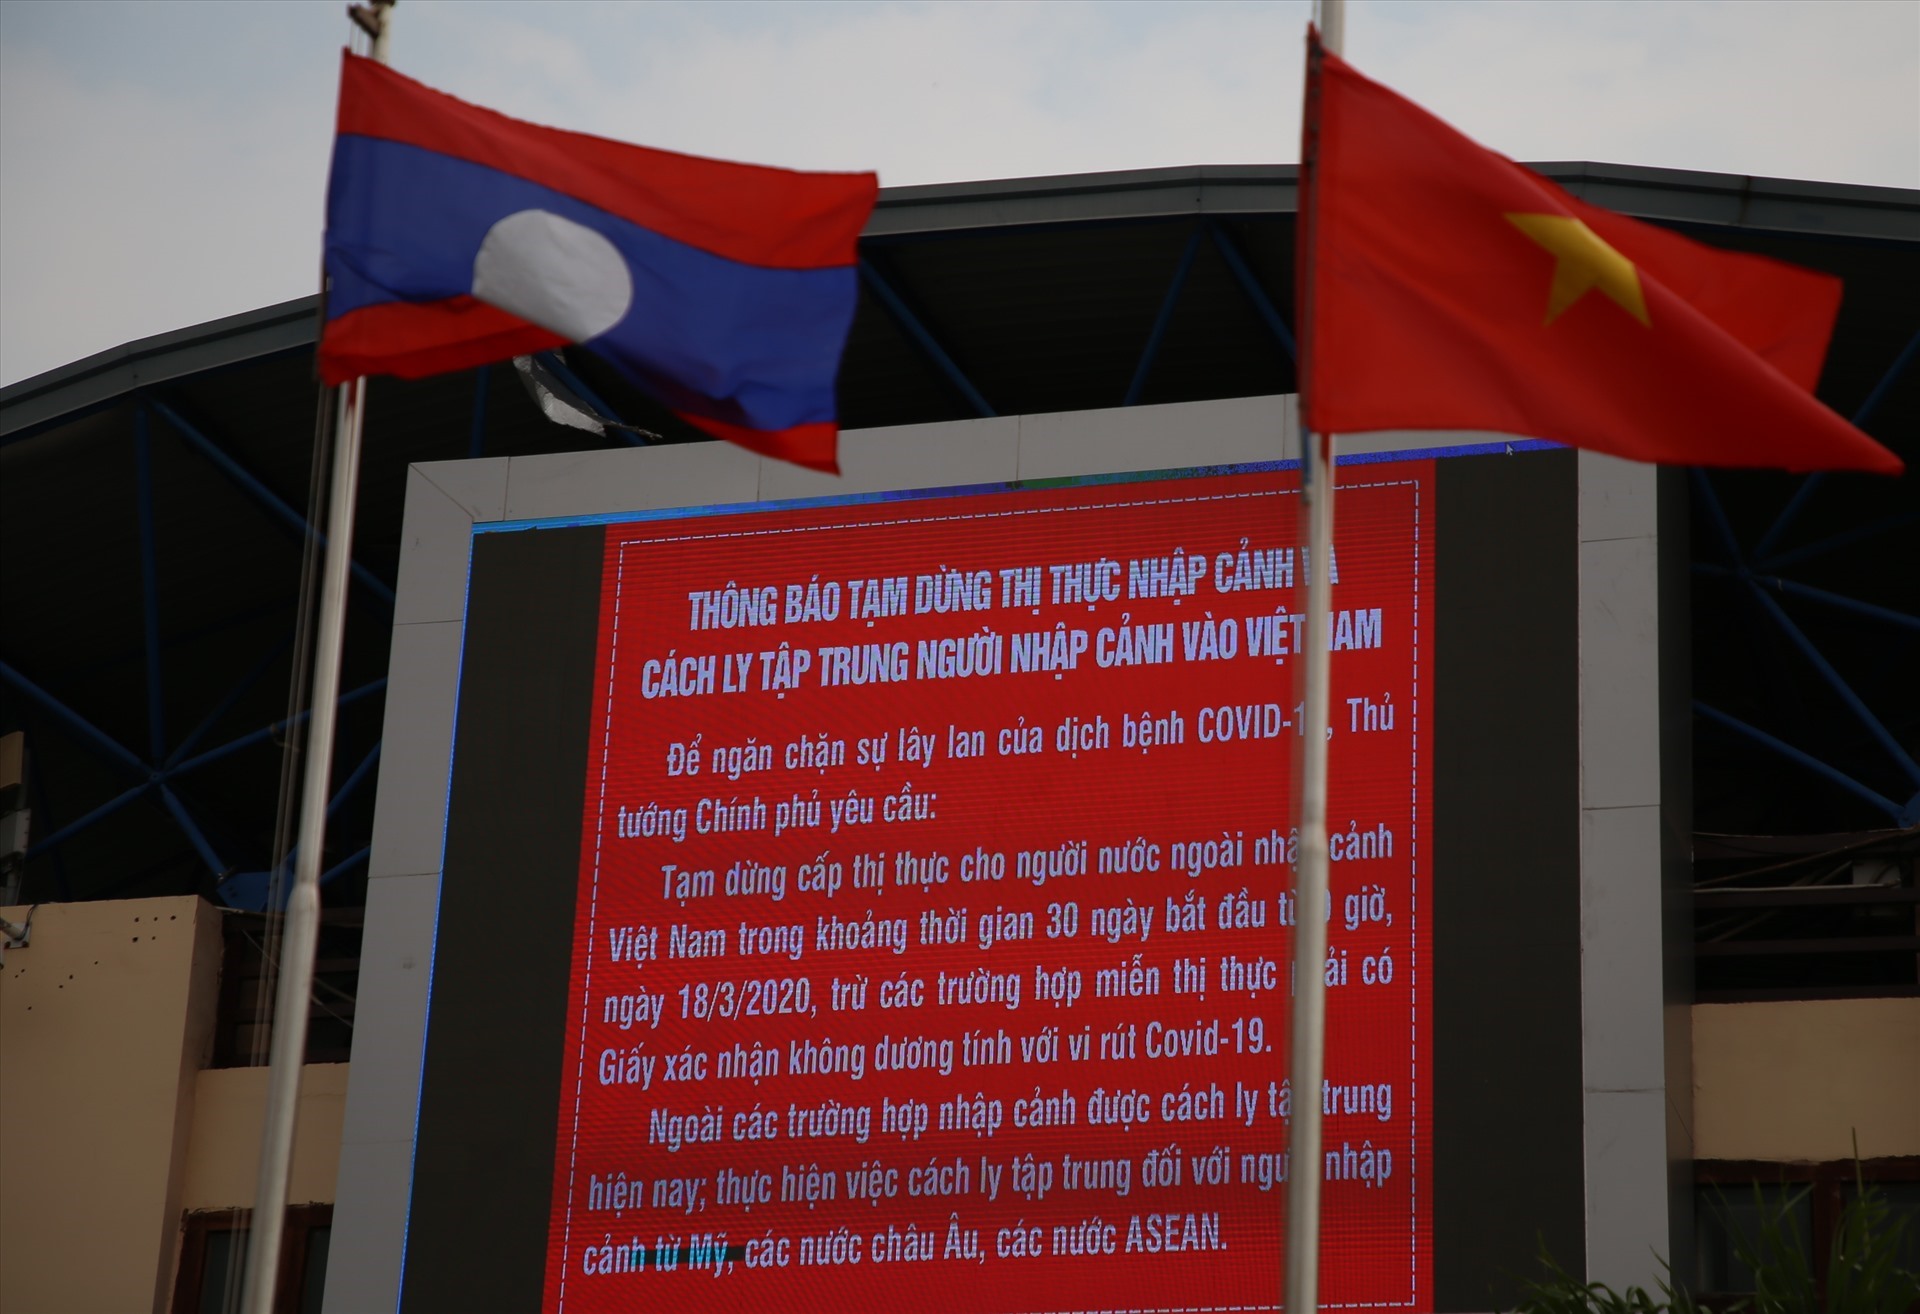 Ở khu vực Cửa khẩu Quốc tế Lao Bảo, thông báo về việc dừng thị thực nhập cảnh và cách ly tập trung người nhập cảnh vào Việt Nam được thông báo liên tục bằng loa và các biểu ngữ.